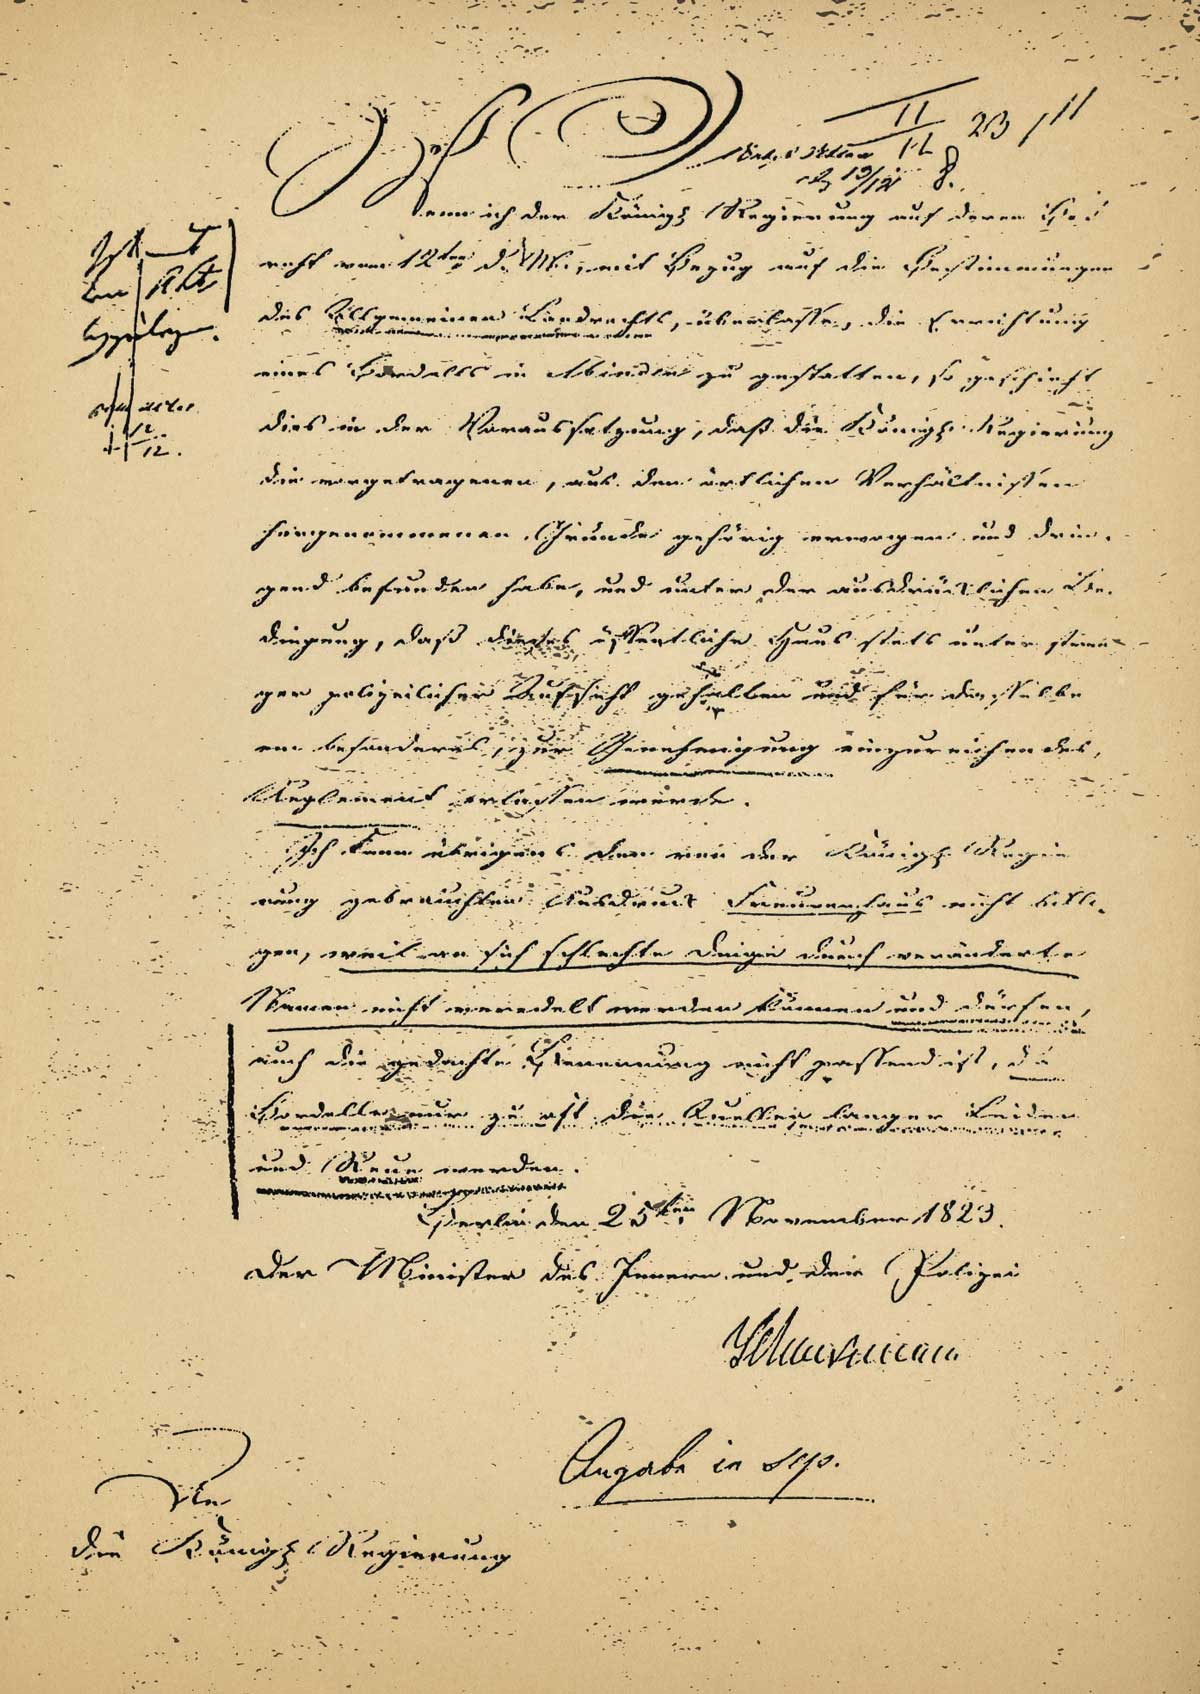 Schreiben des Innenministers Friedrich von Schuckmann vom 25. November 1823 nach Minden.psd